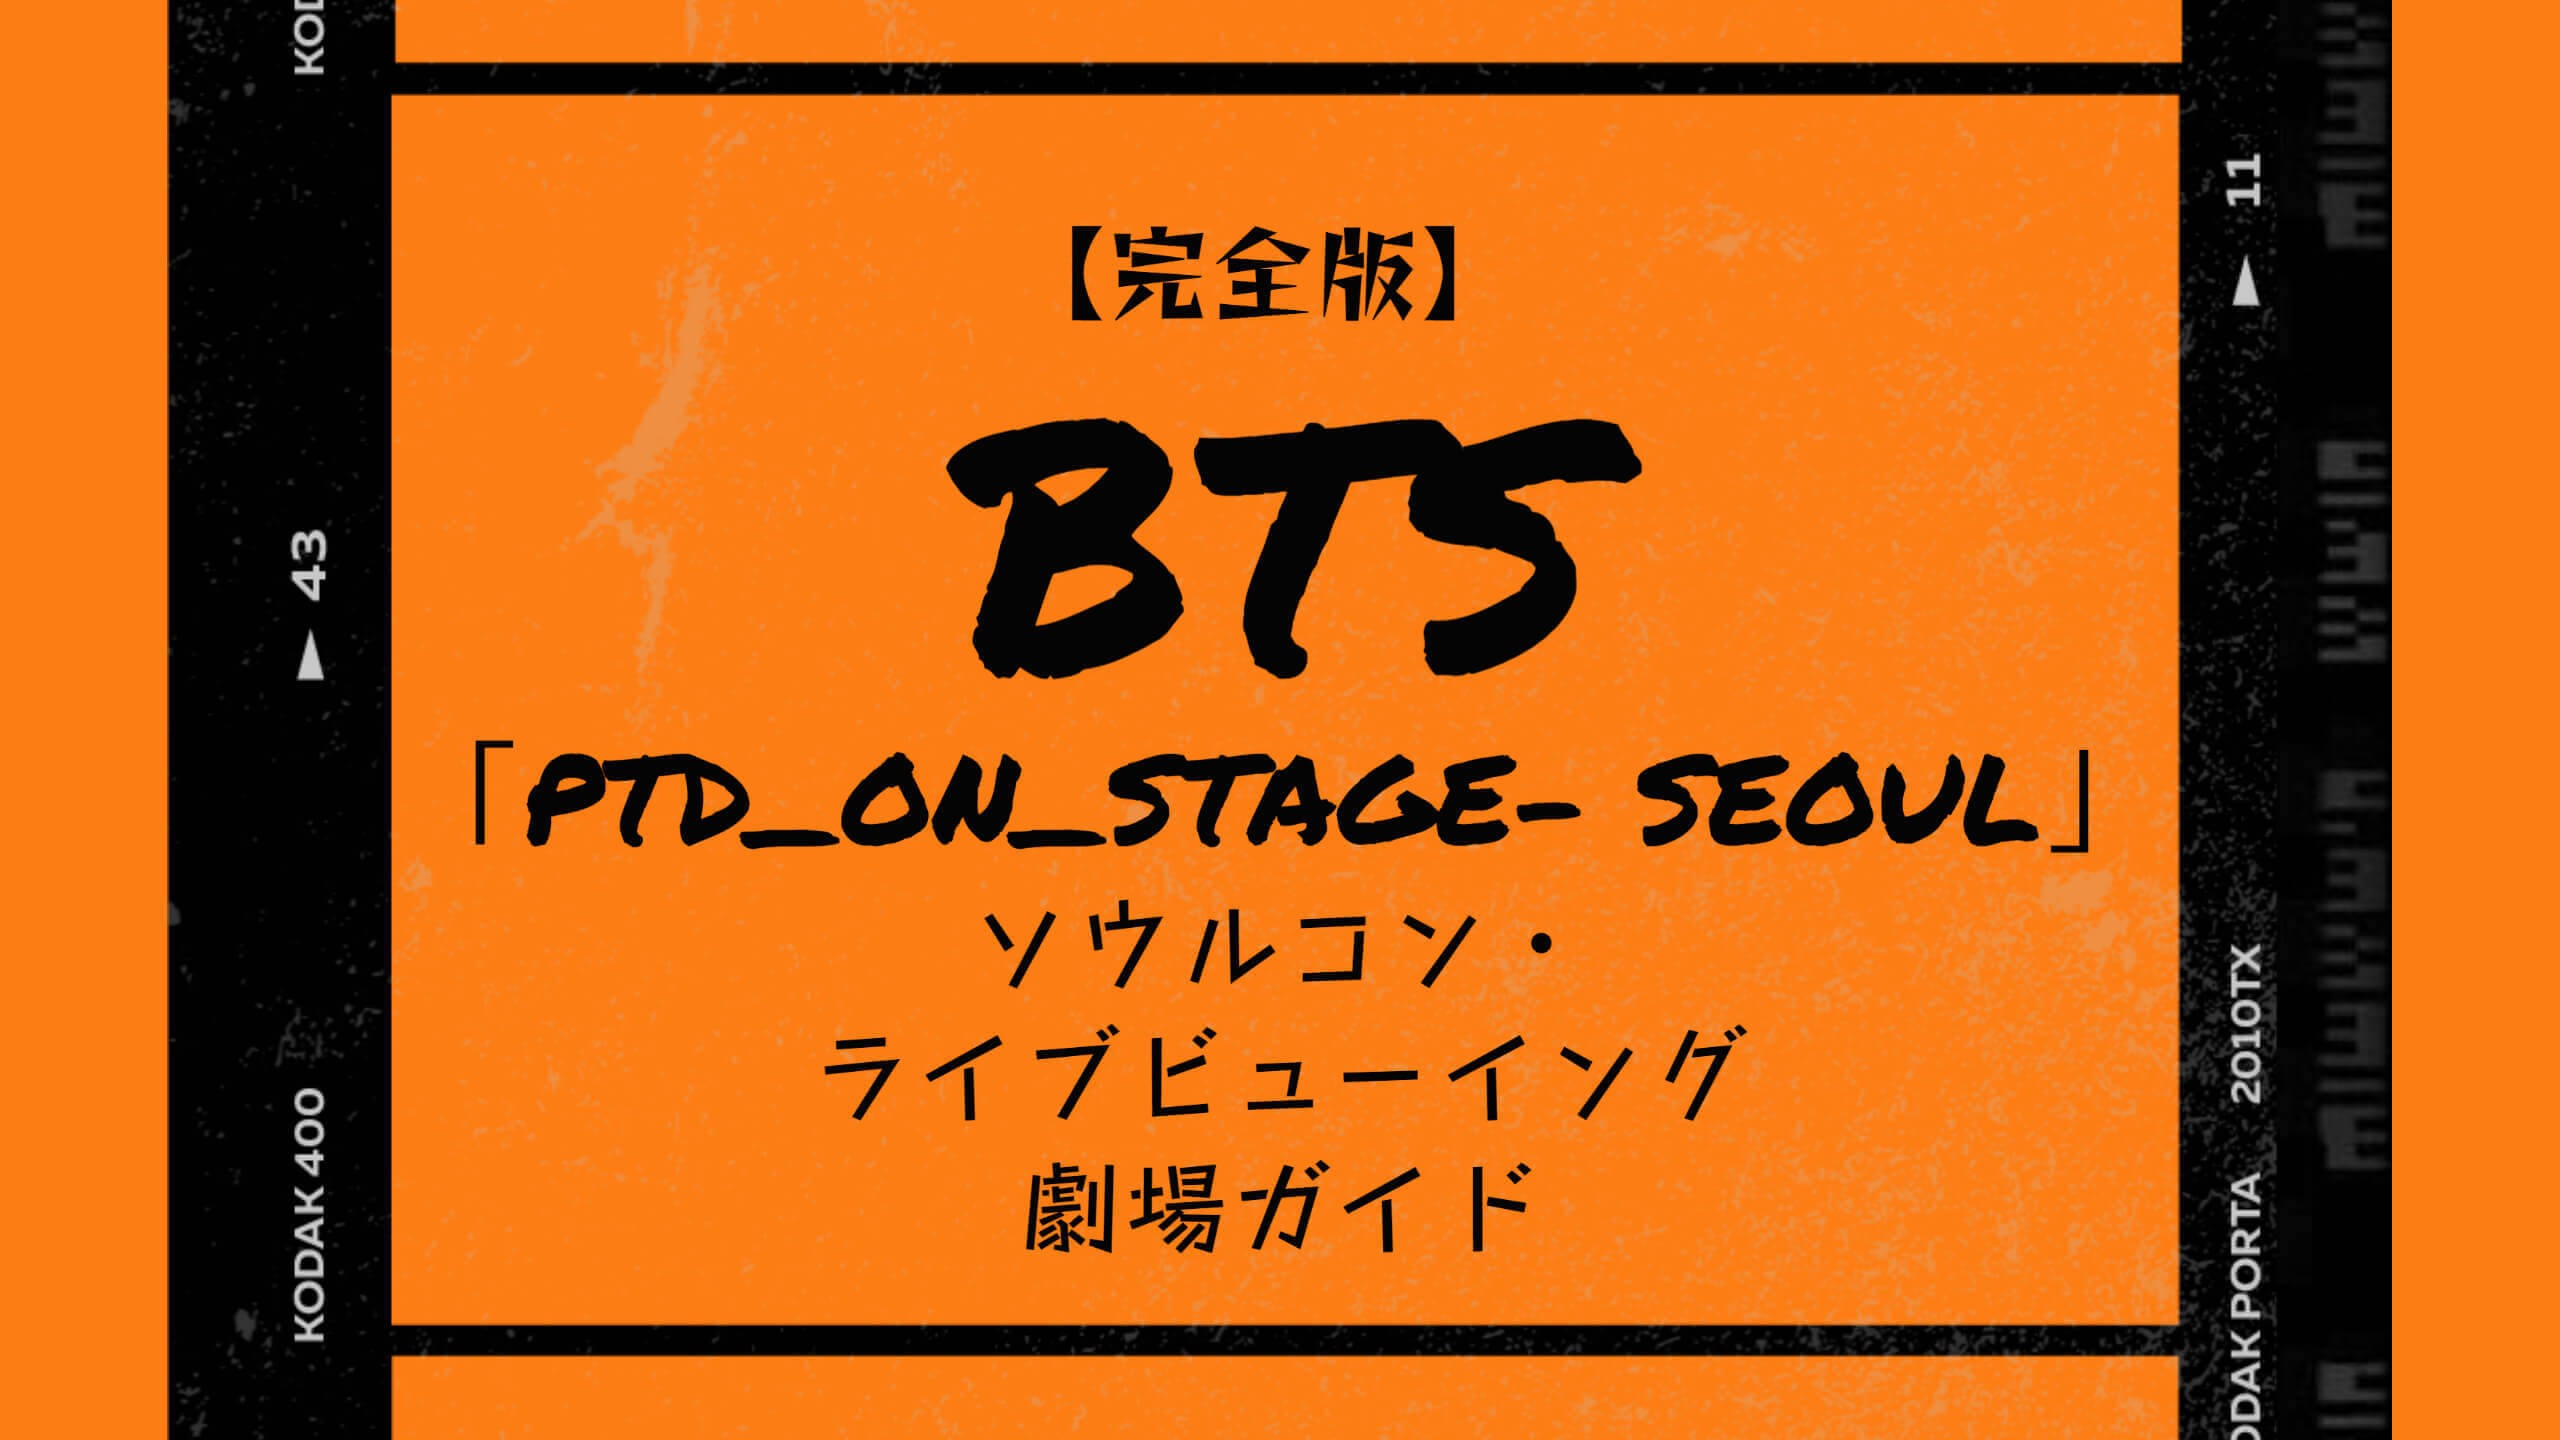 完全版】BTS「PTD_ON_STAGE- SEOUL」ライブビューイング劇場ガイド «